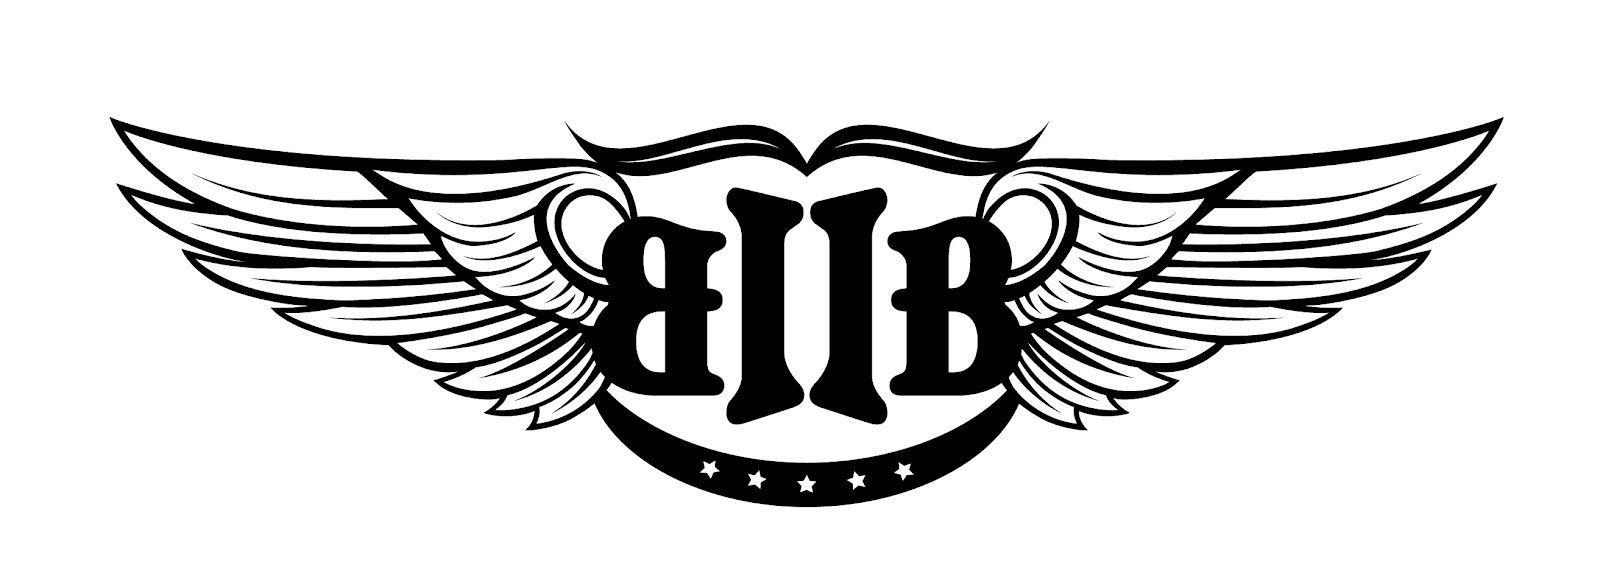 Btob Logo - btob logo. BTOB. Btob, Logos és Kpop logos